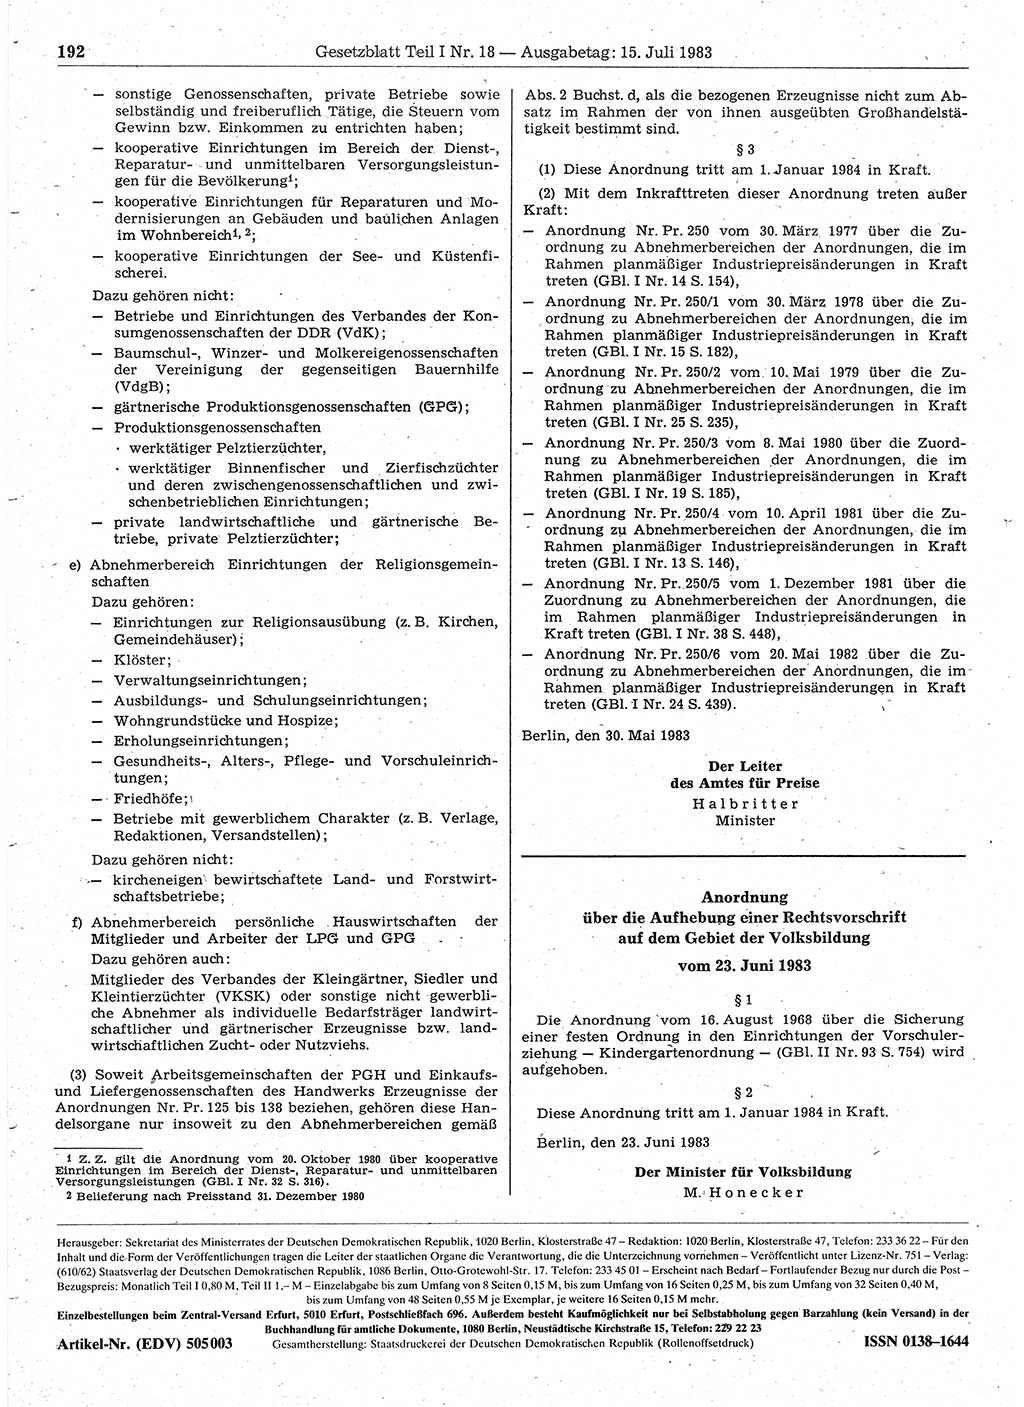 Gesetzblatt (GBl.) der Deutschen Demokratischen Republik (DDR) Teil Ⅰ 1983, Seite 192 (GBl. DDR Ⅰ 1983, S. 192)